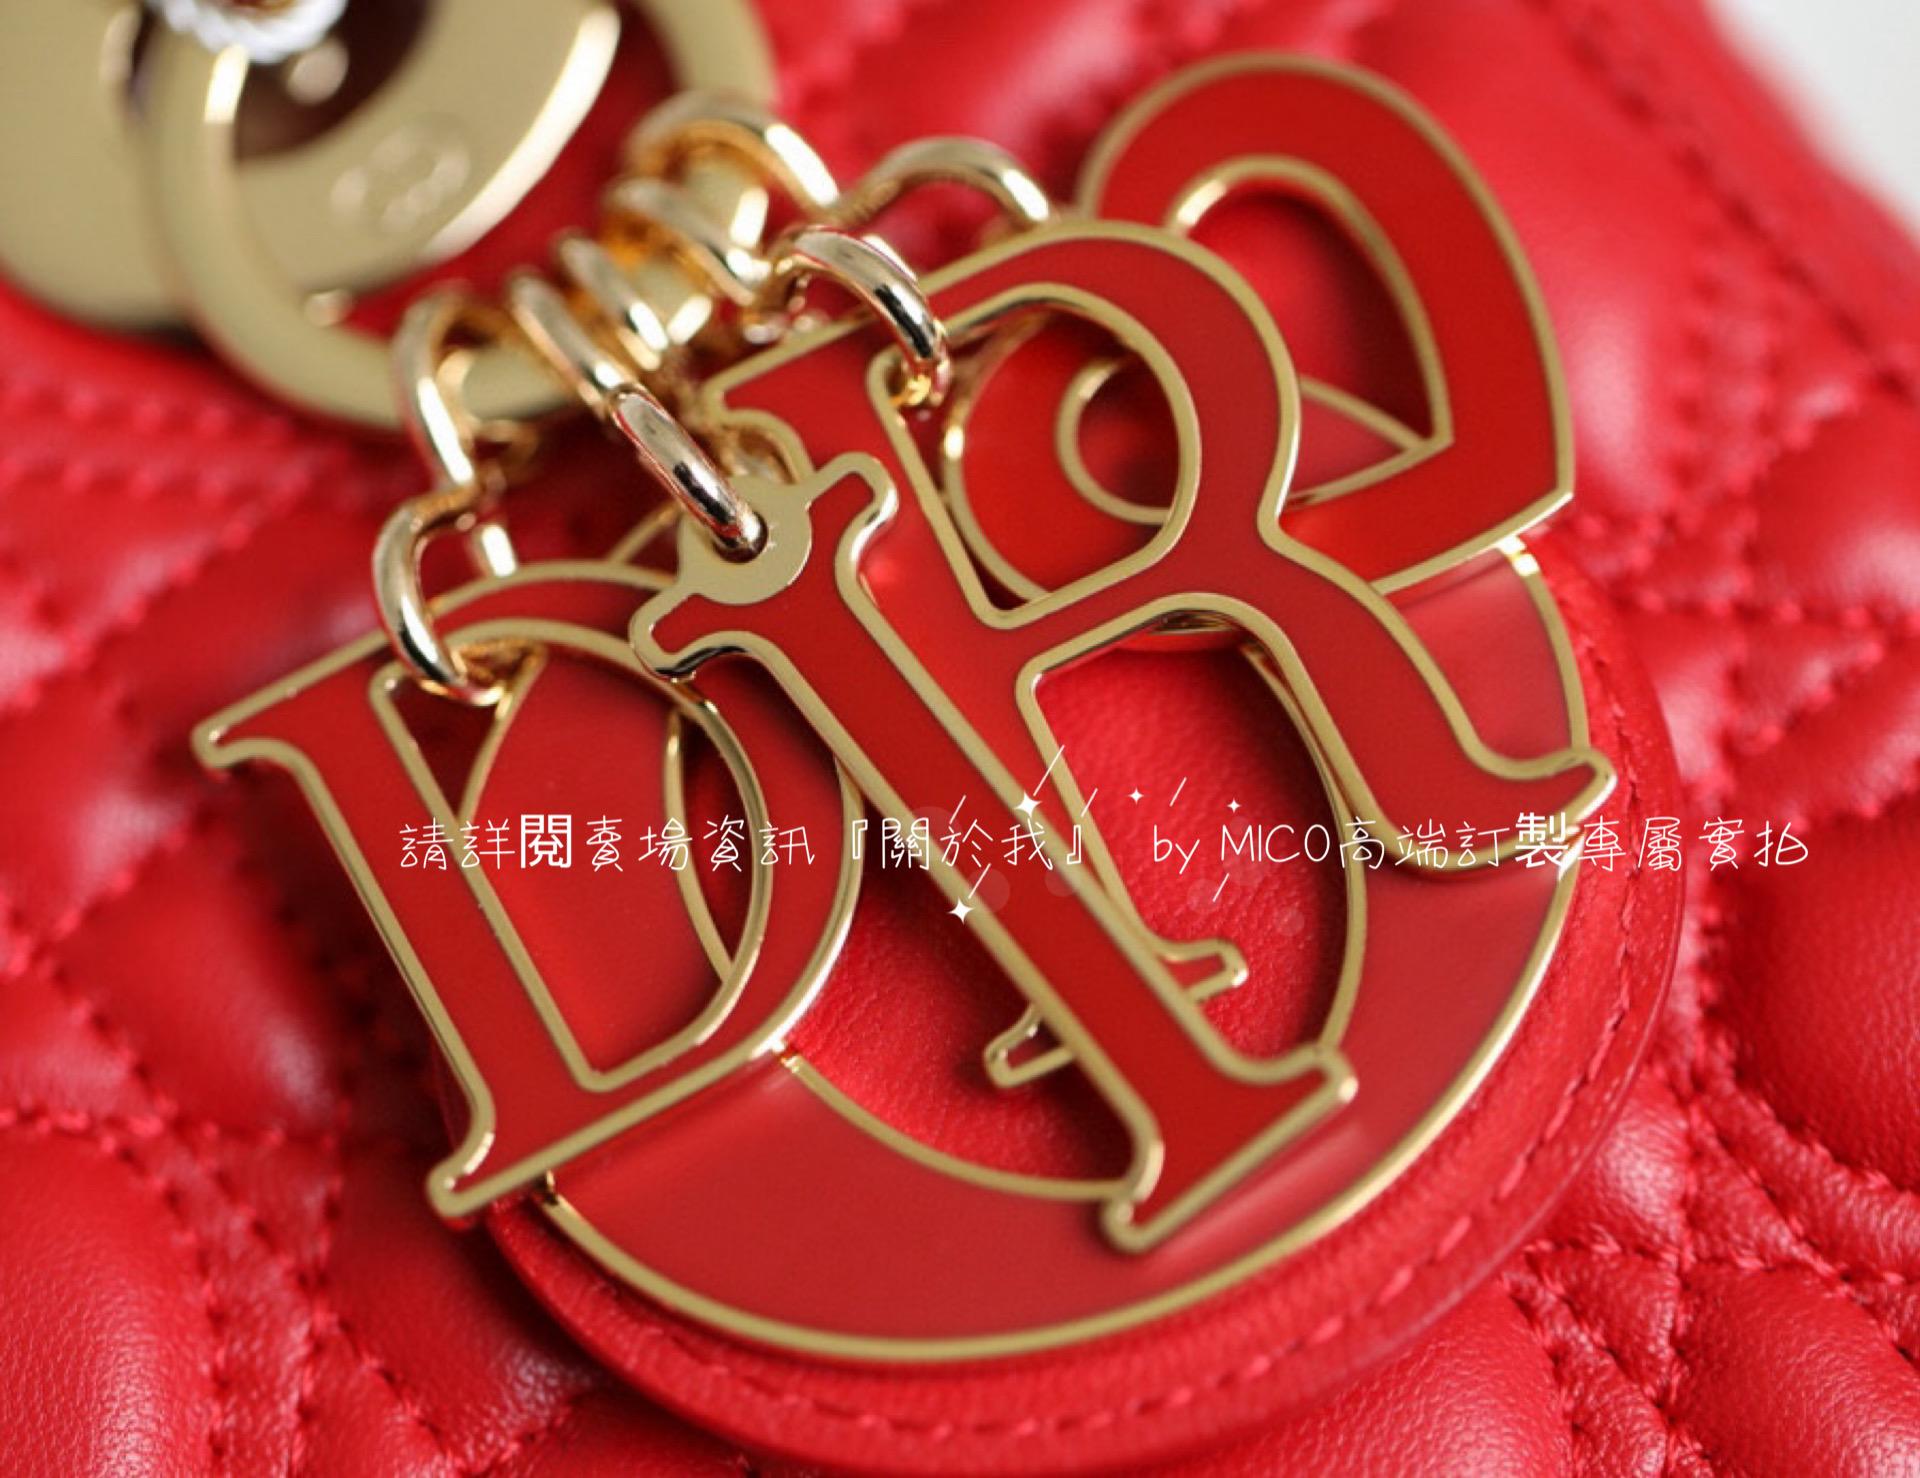 DIOR 愛心藤格紋/羊皮/紅色/金釦 Lady Dior My ABCDior 手袋 Dioramour 限定系列 20cm